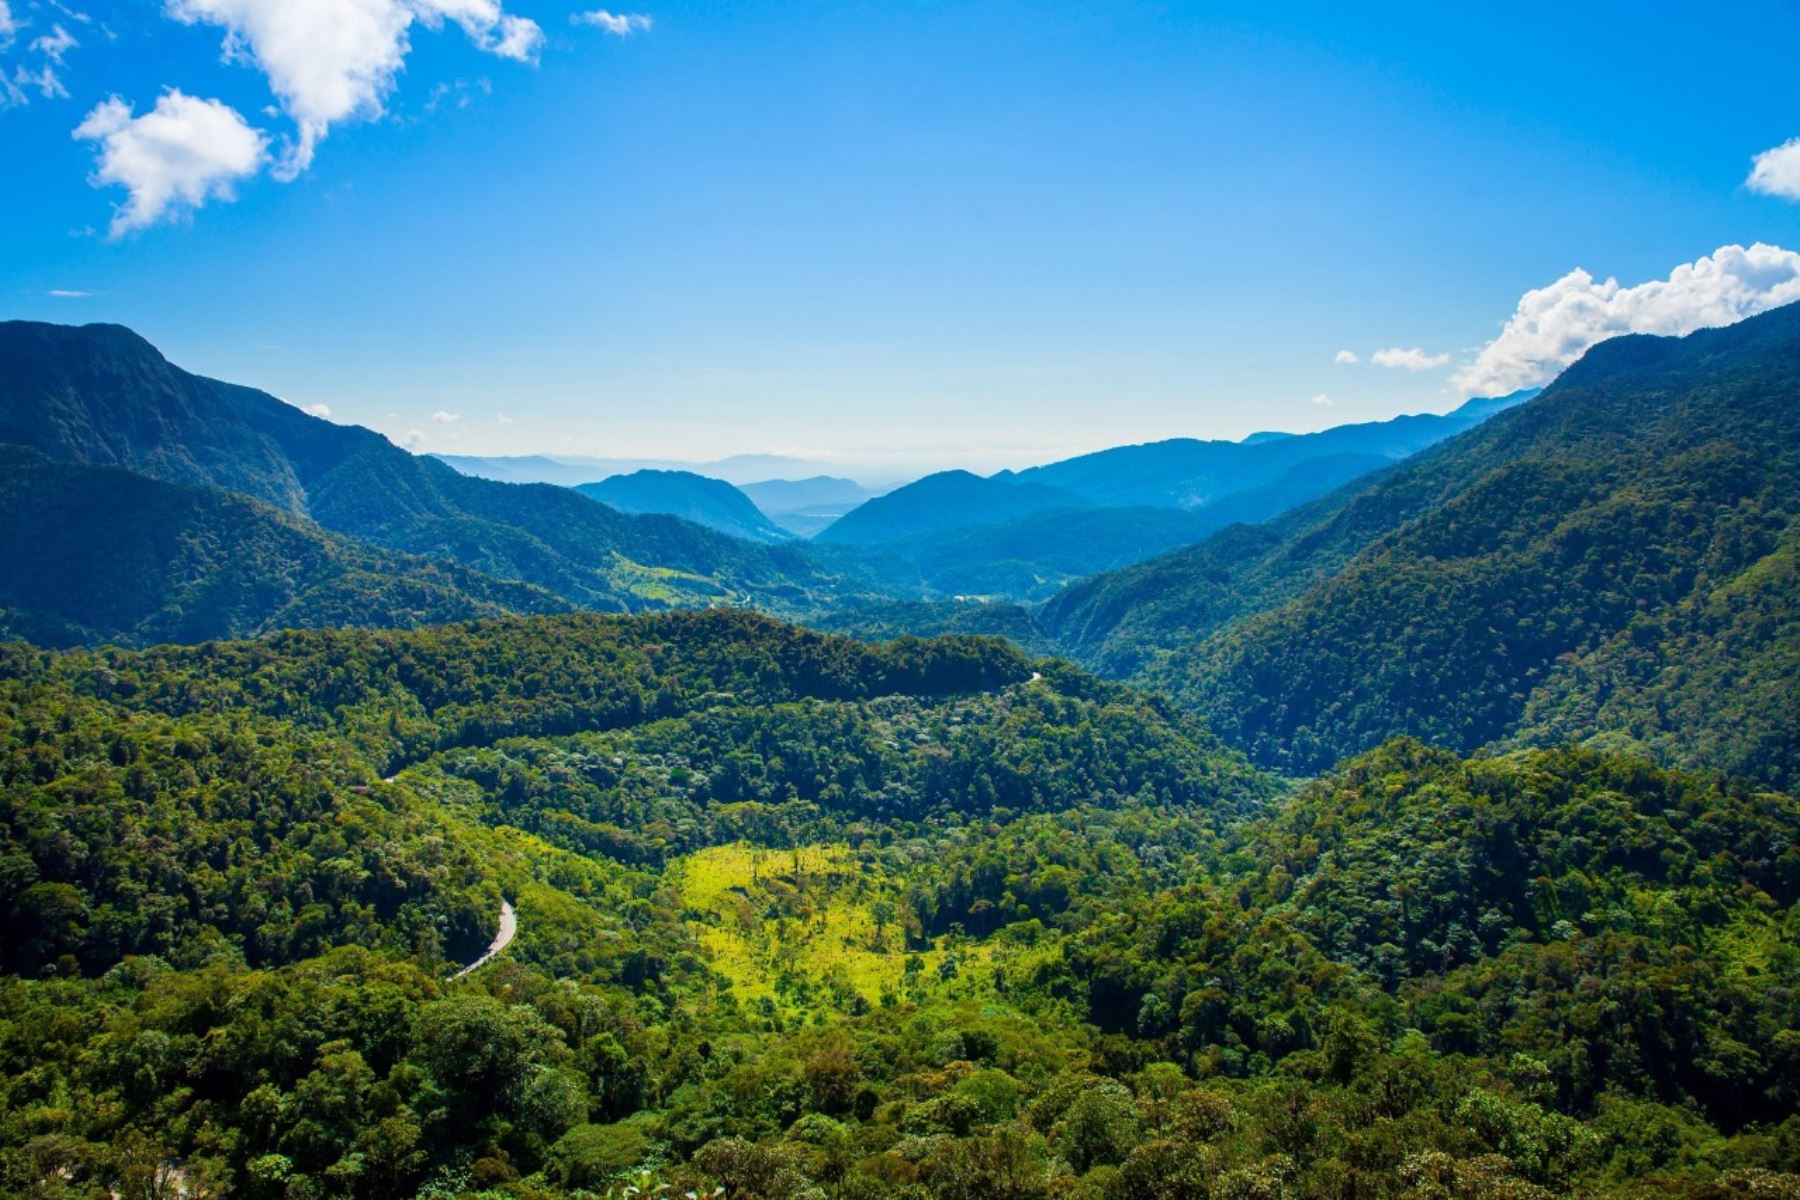 El Bosque de Protección Alto Mayo es una zona protegida ubicada en la cuenca alta del río Mayo y está conformada por selvas de montaña nubosas y lluviosas con gran biodiversidad.